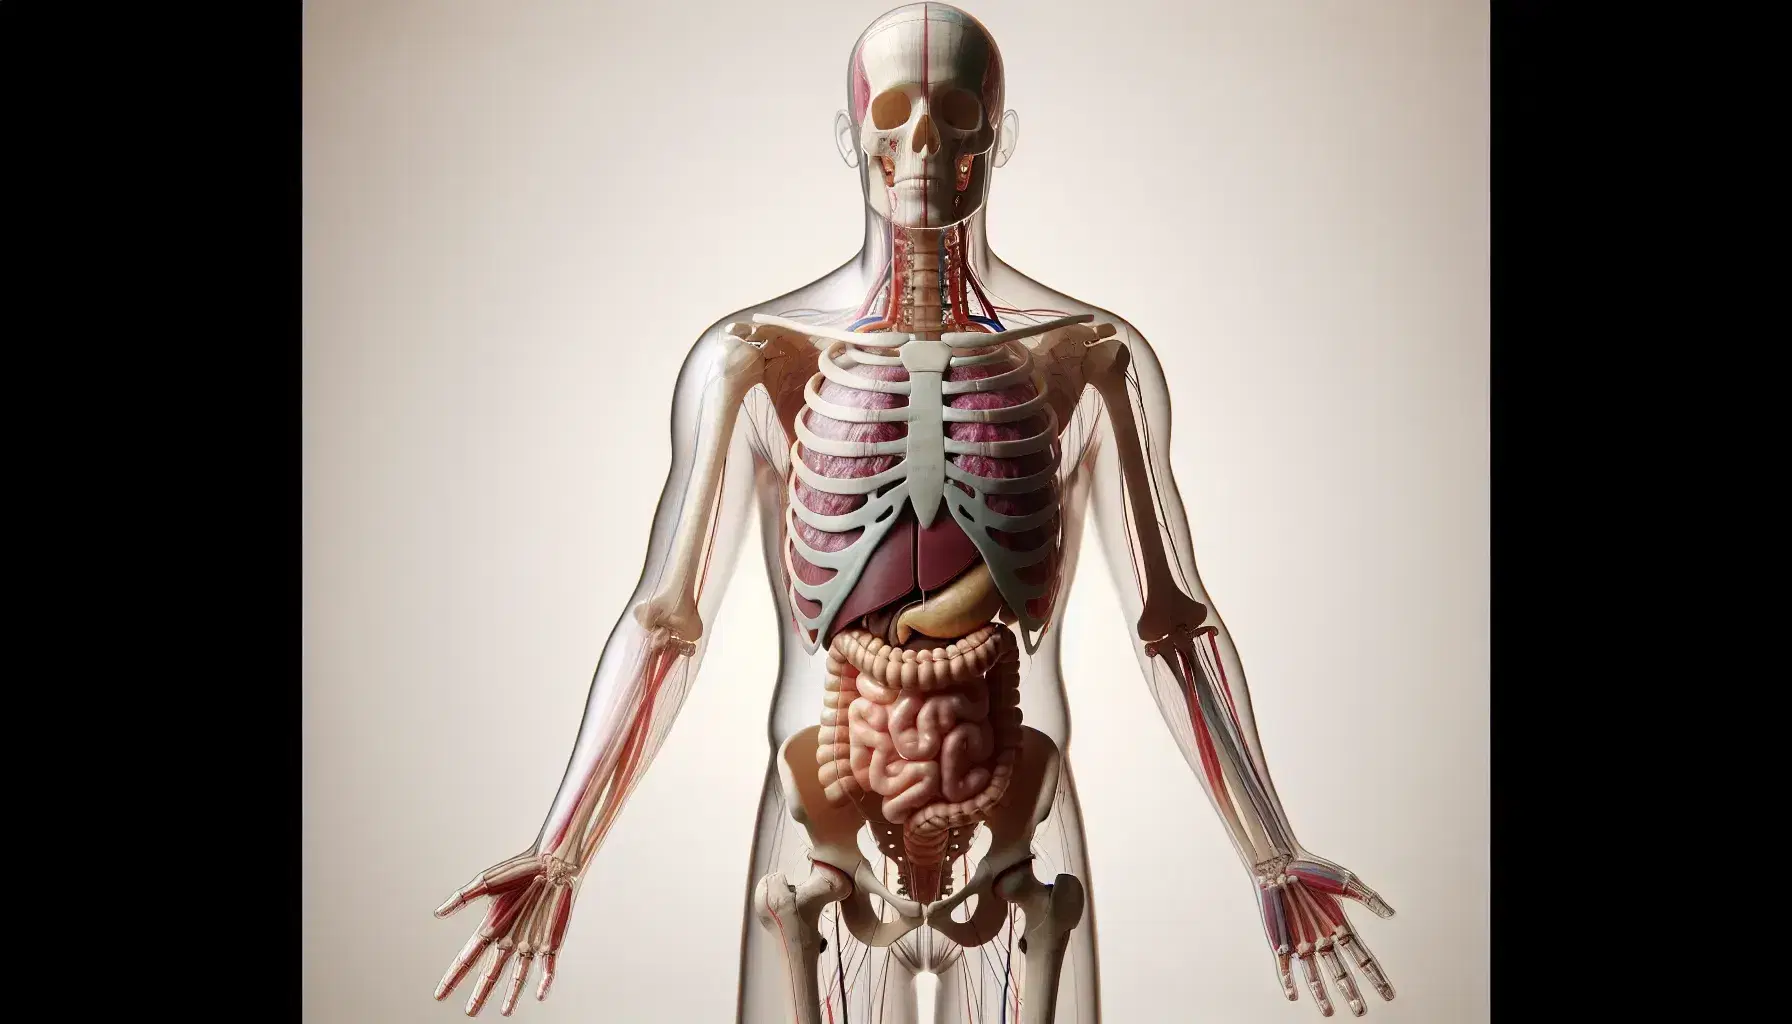 Figura humana transparente mostrando huesos, músculos y órganos internos en colores variados, con divisiones abdominales marcadas, en posición anatómica.